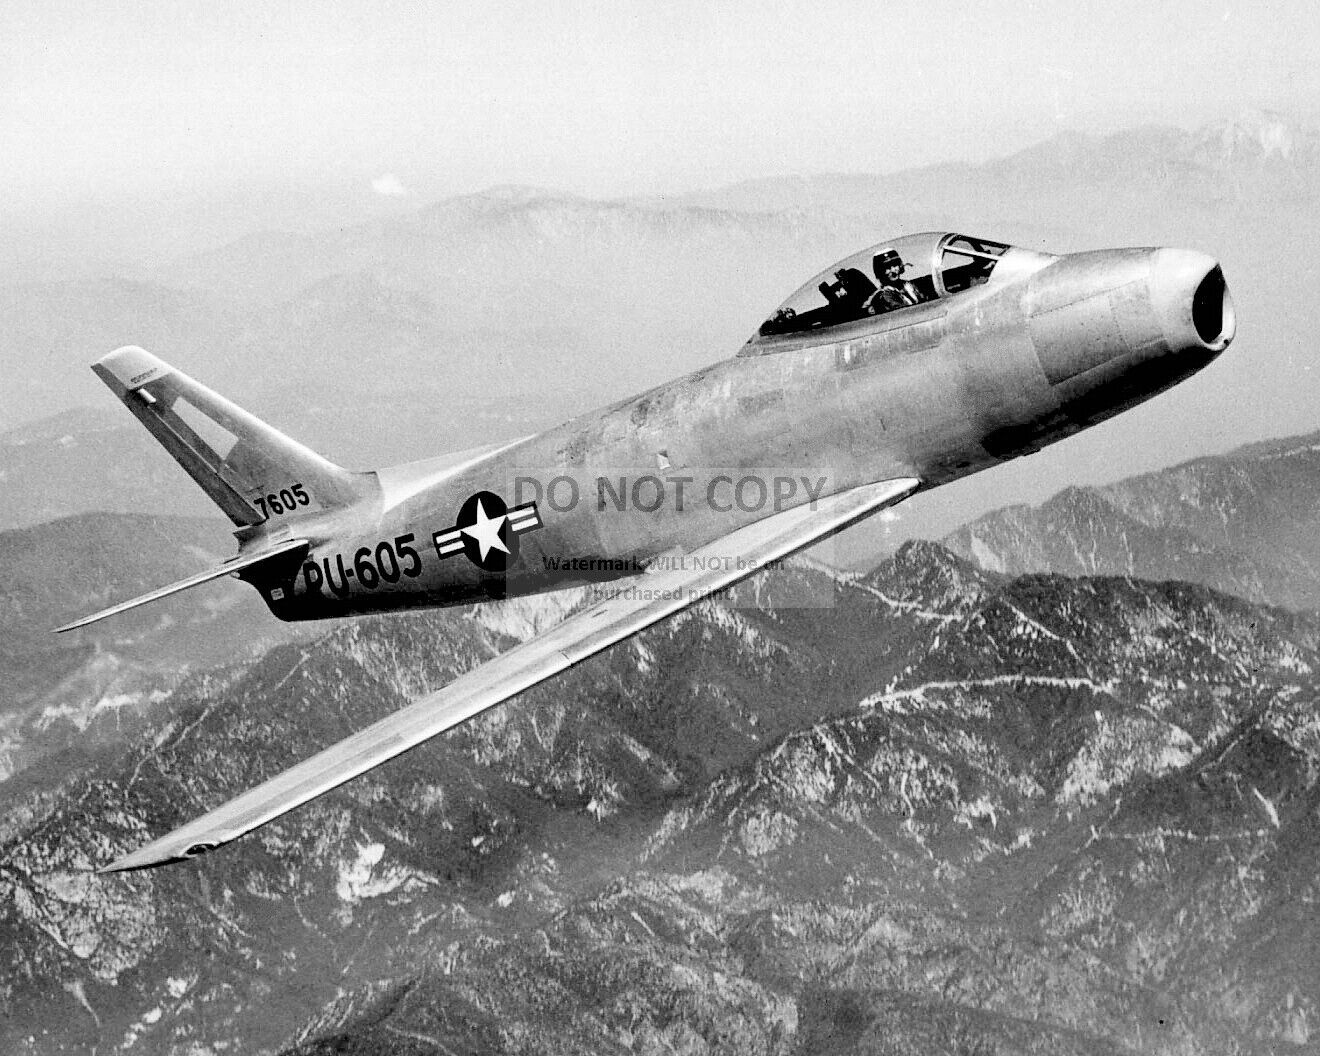 NORTH AMERICAN F-86 SABRE IN FLIGHT, CIRCA 1951 - 8X10 PHOTO (MW519)